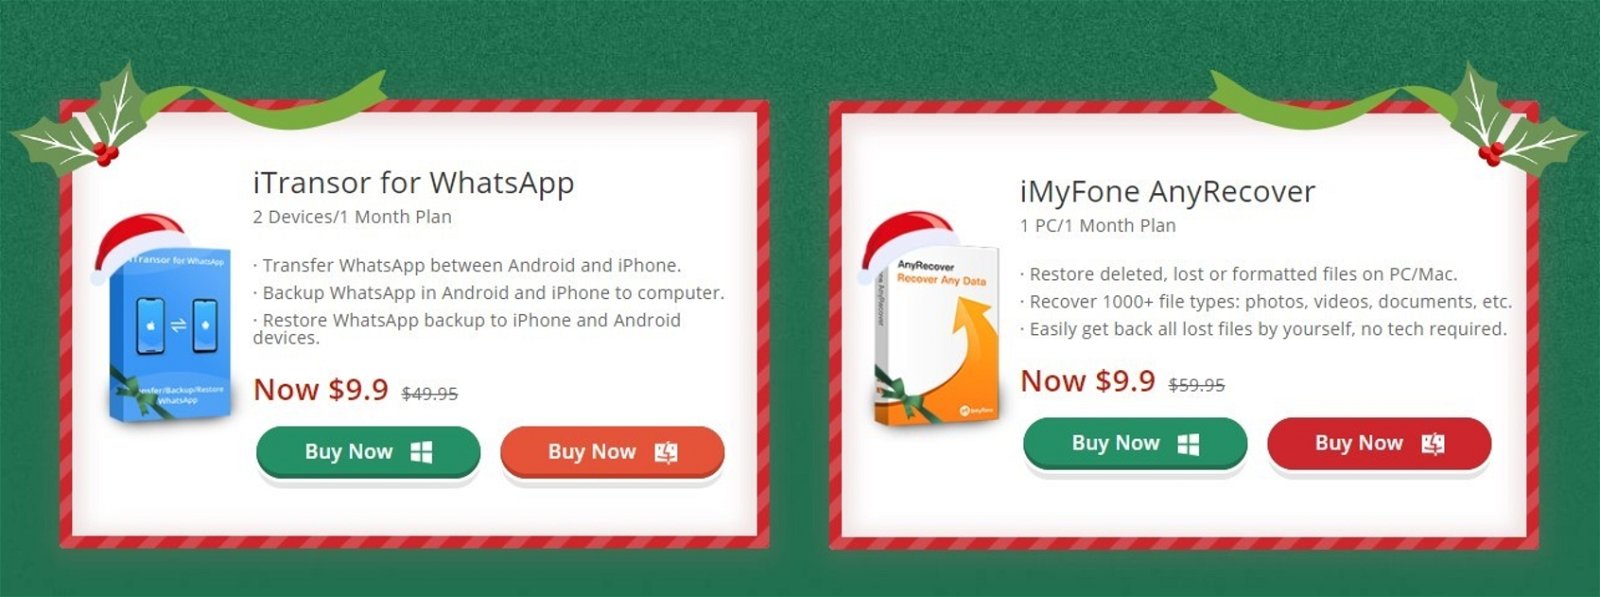 Ofertas navideñas de iMyFone